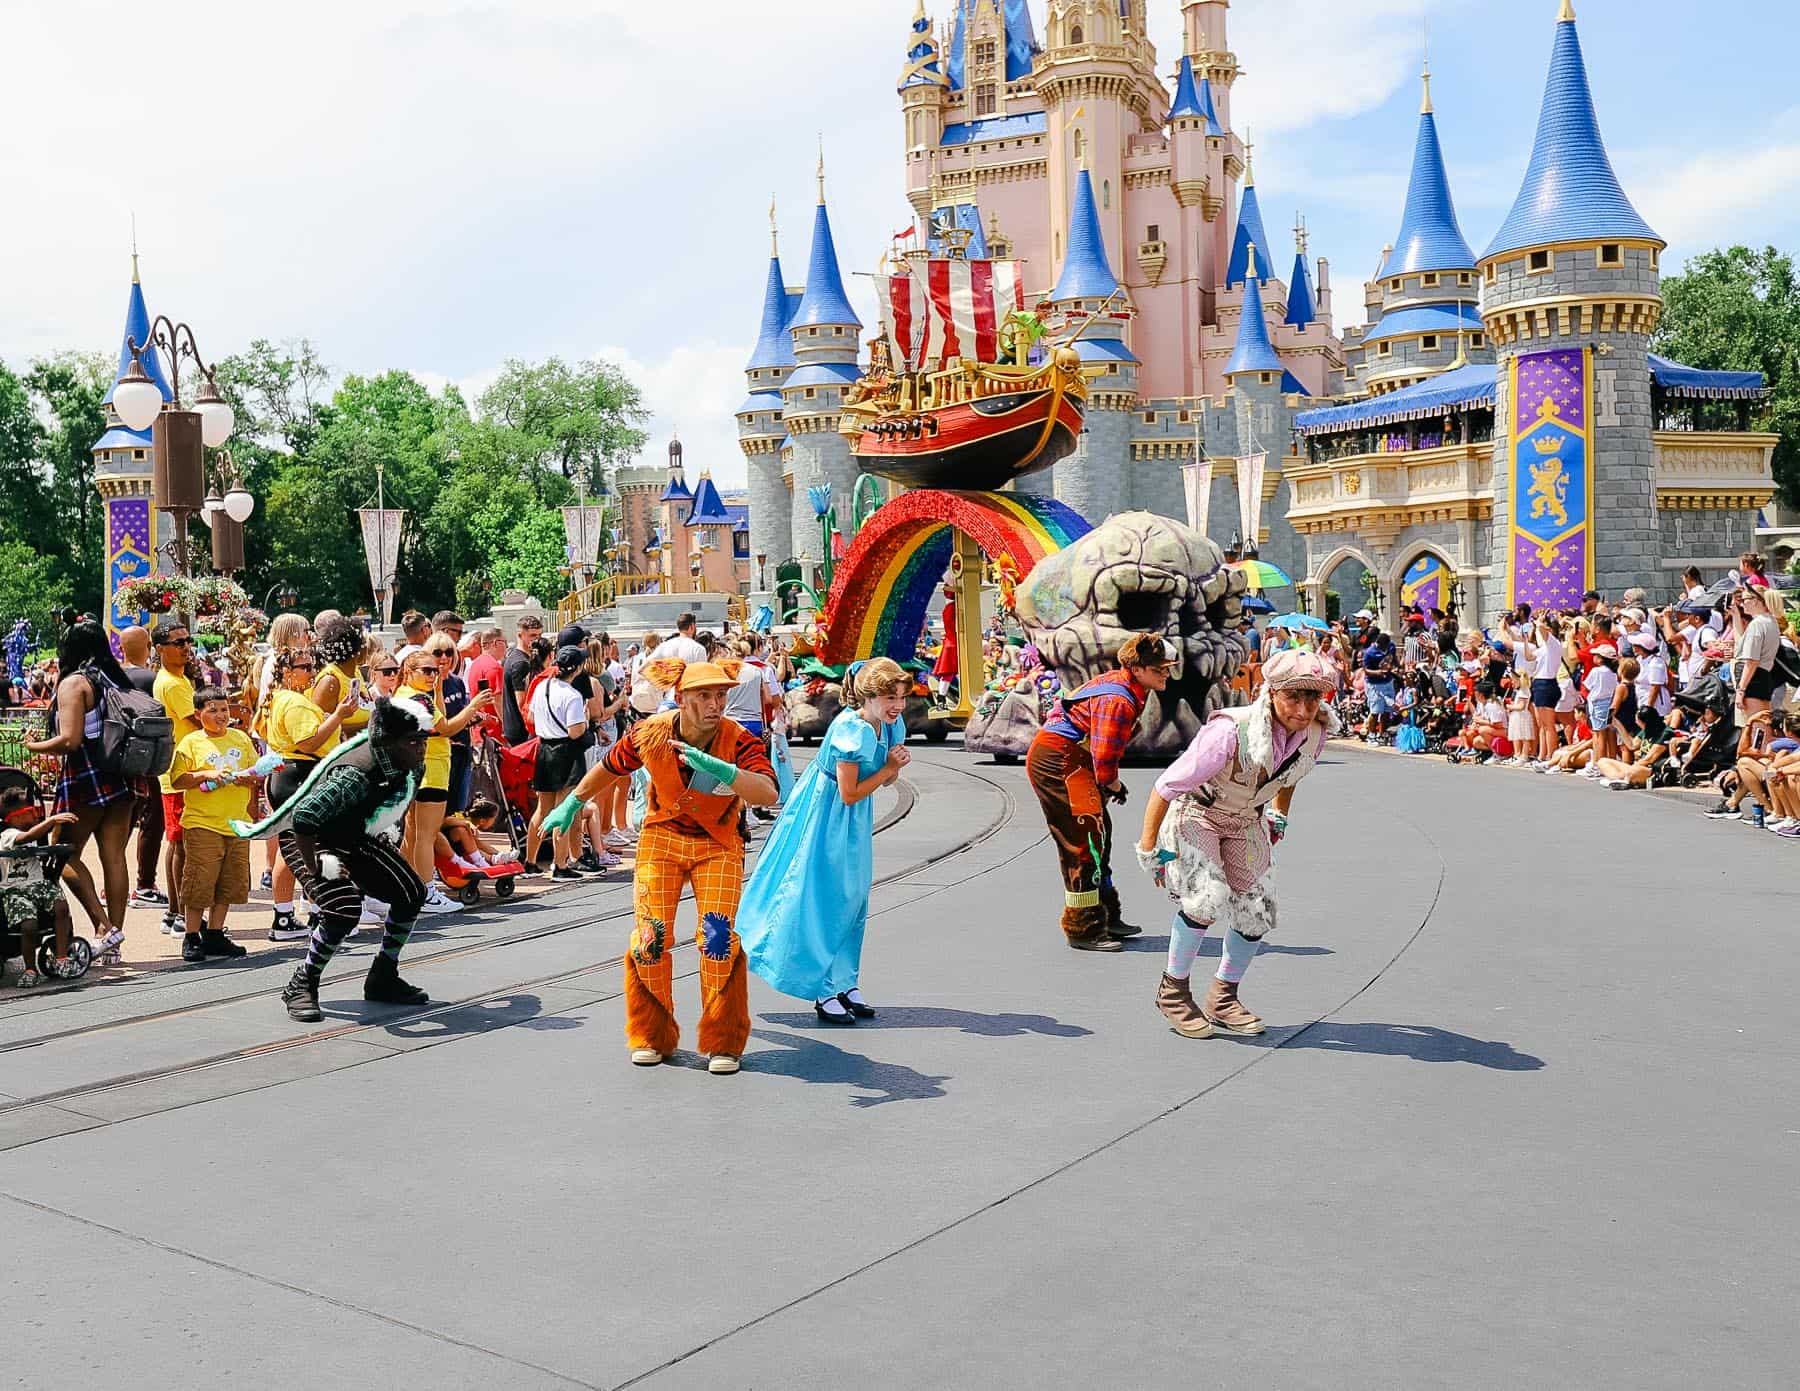 Peter Pan characters at Magic Kingdom